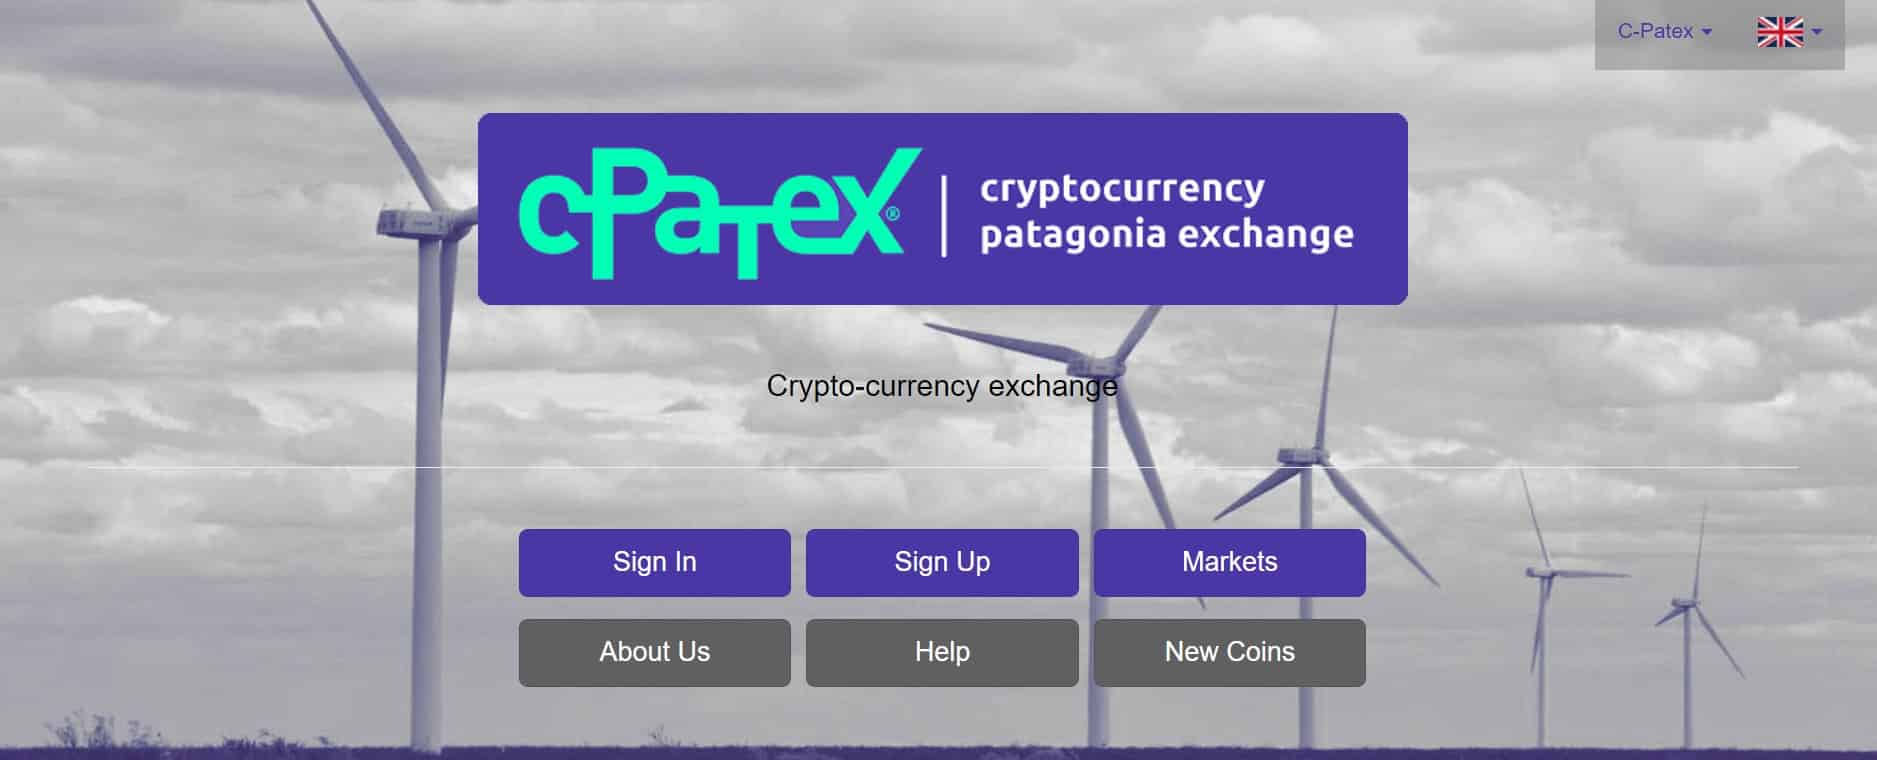 C-Patex website